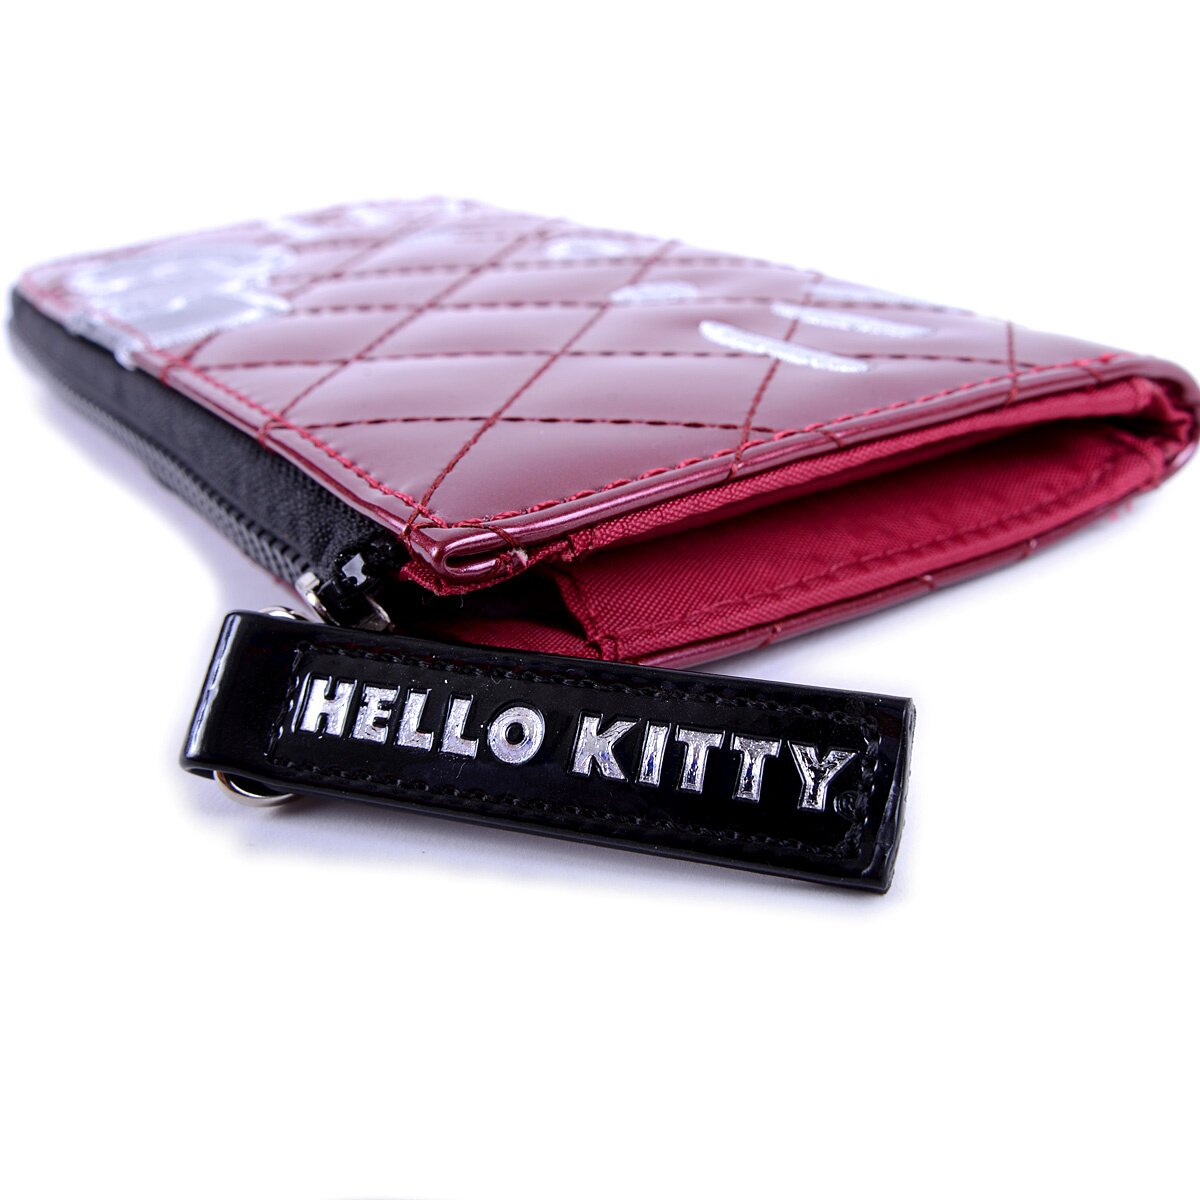 HELLO KITTY | Hello kitty accessories, Hello kitty bag, Hello kitty